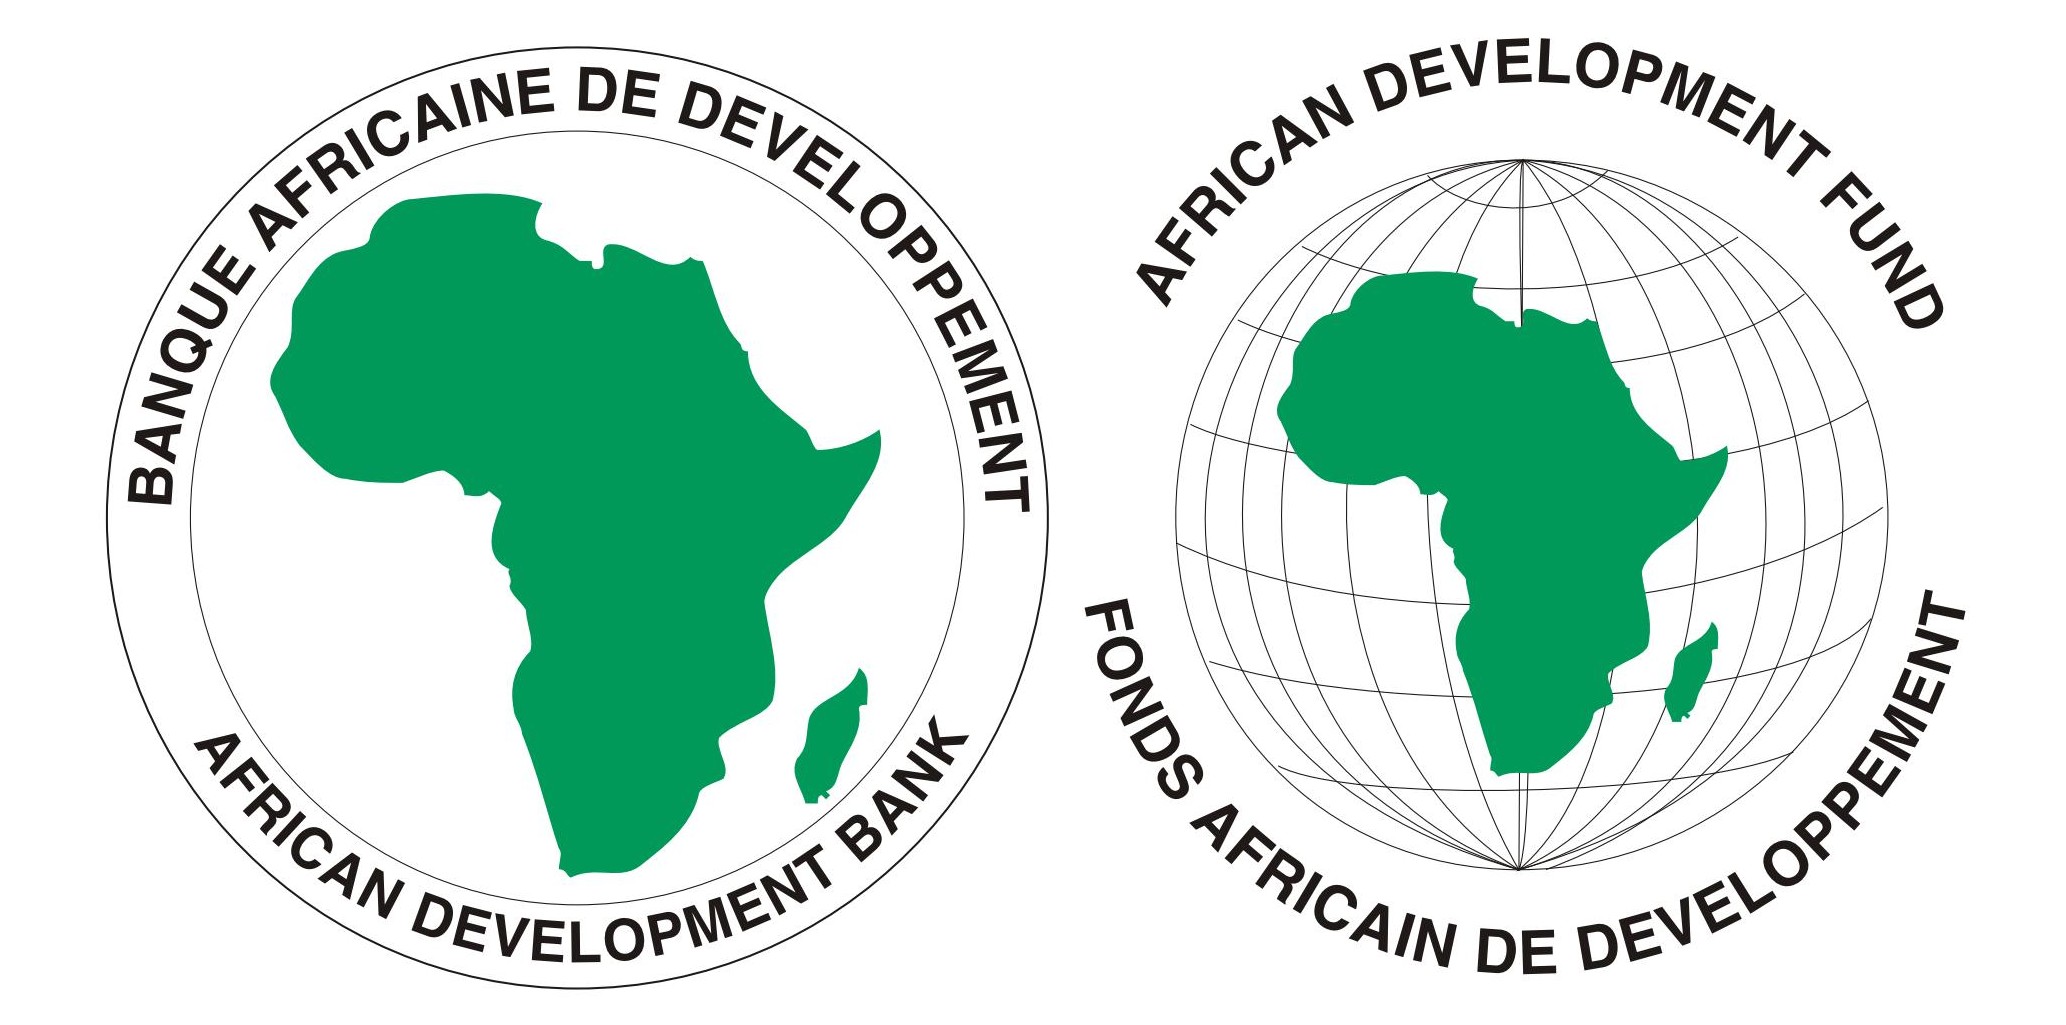 African Developmet Bank